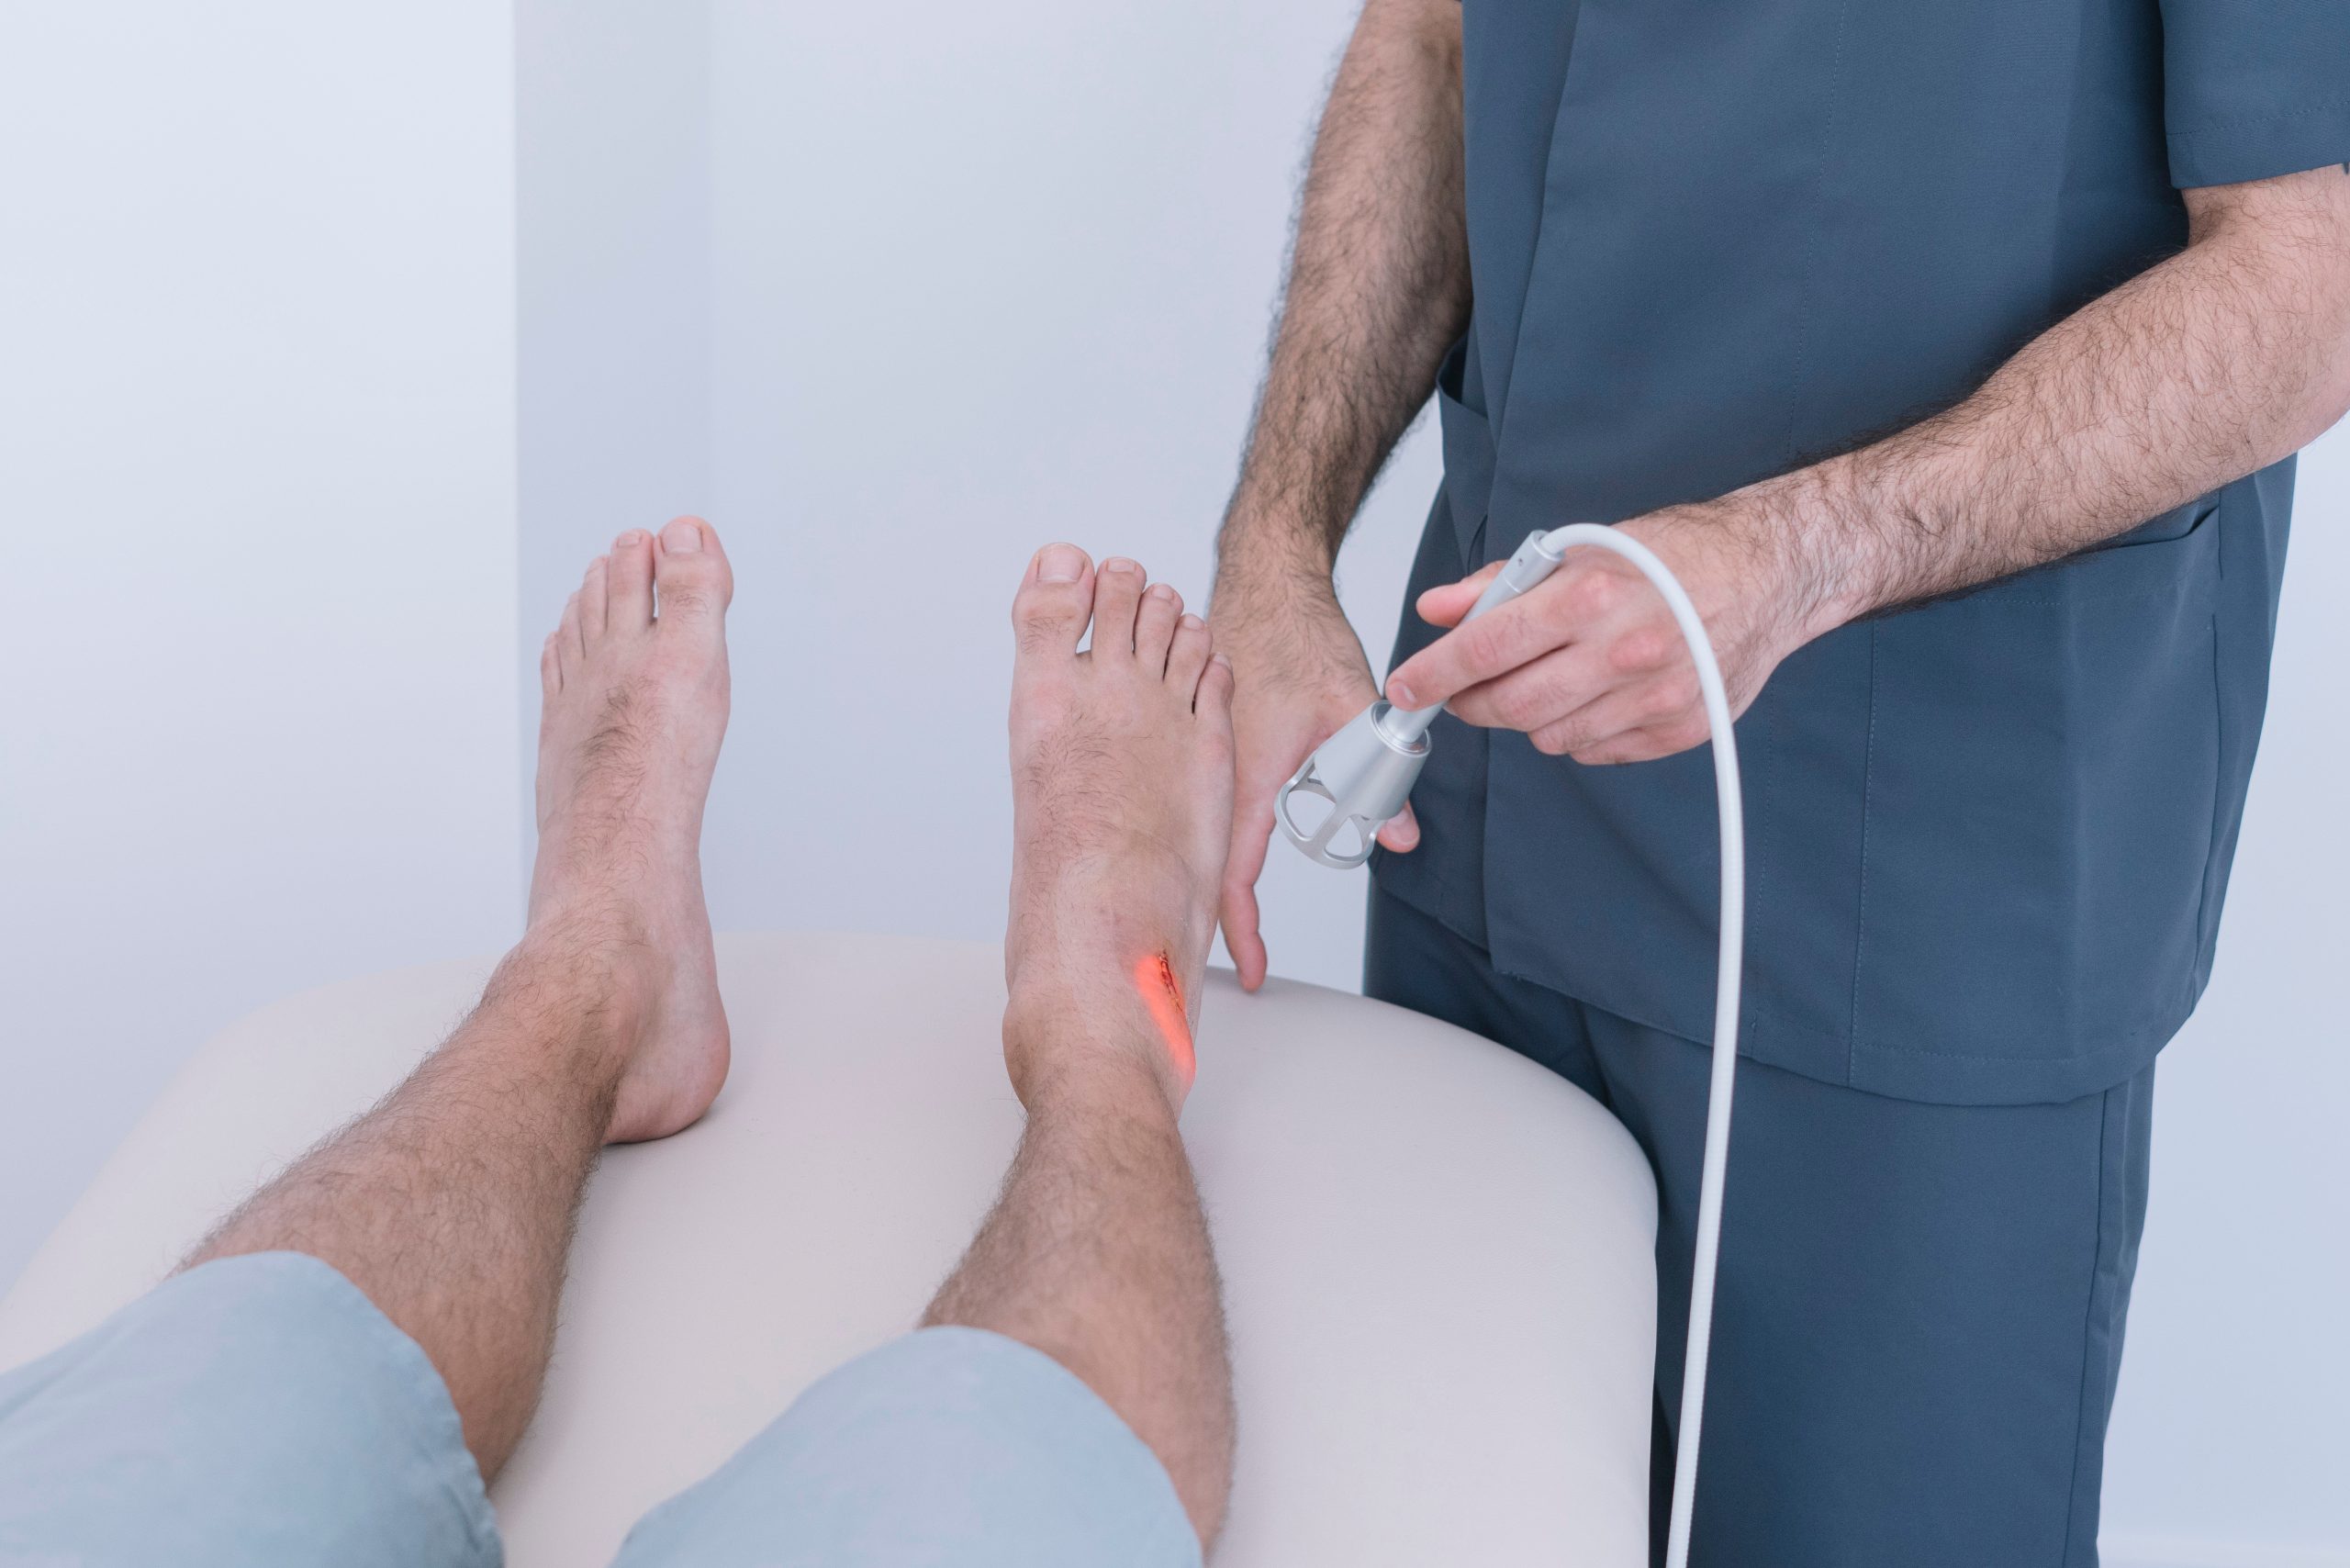 Feet laser treatments